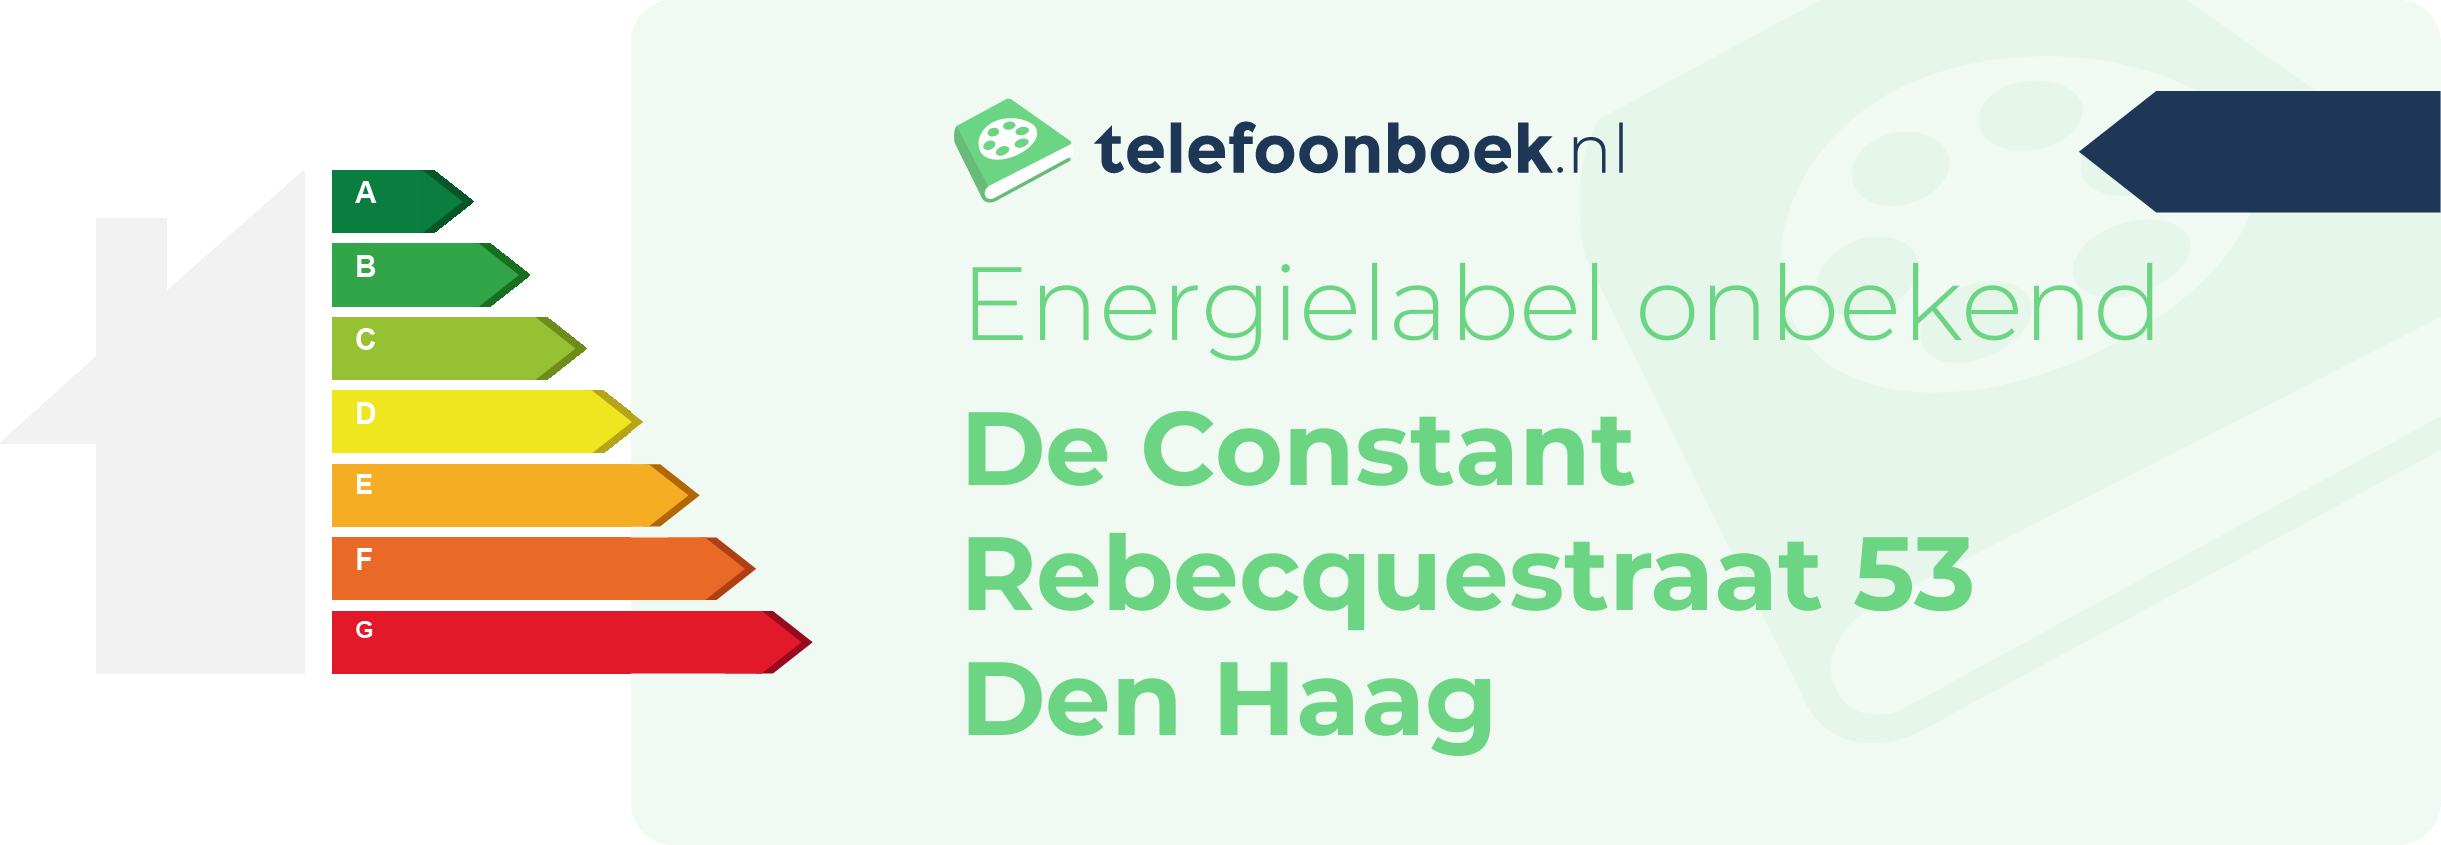 Energielabel De Constant Rebecquestraat 53 Den Haag